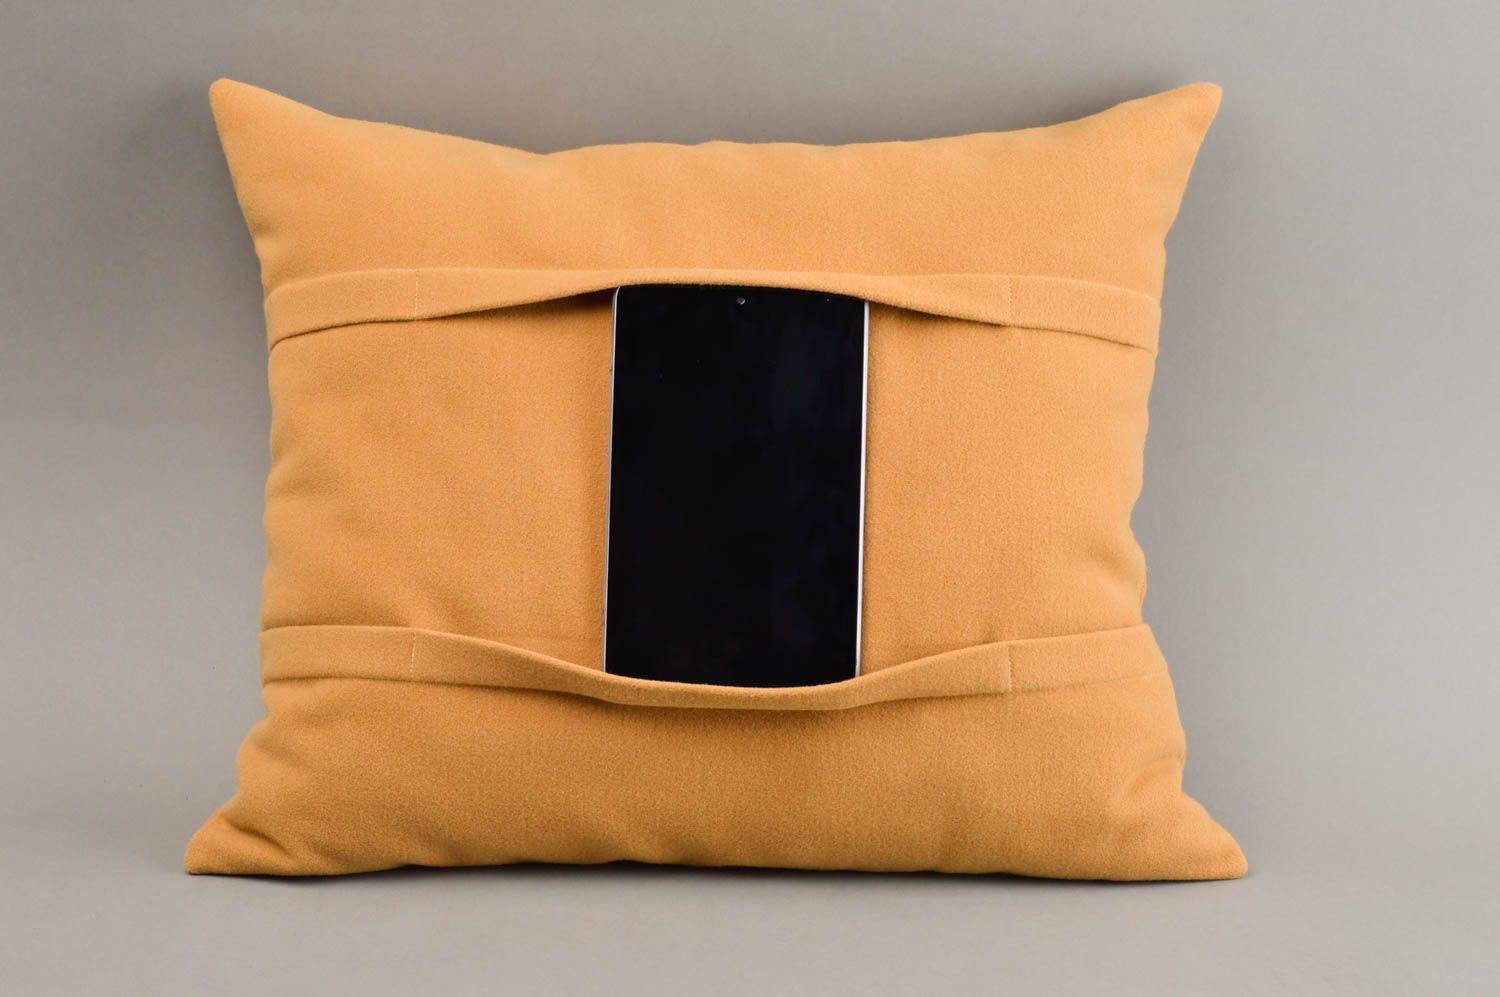 Подарок ручной работы подставка для планшета оранжевая оригинальная подушка фото 1